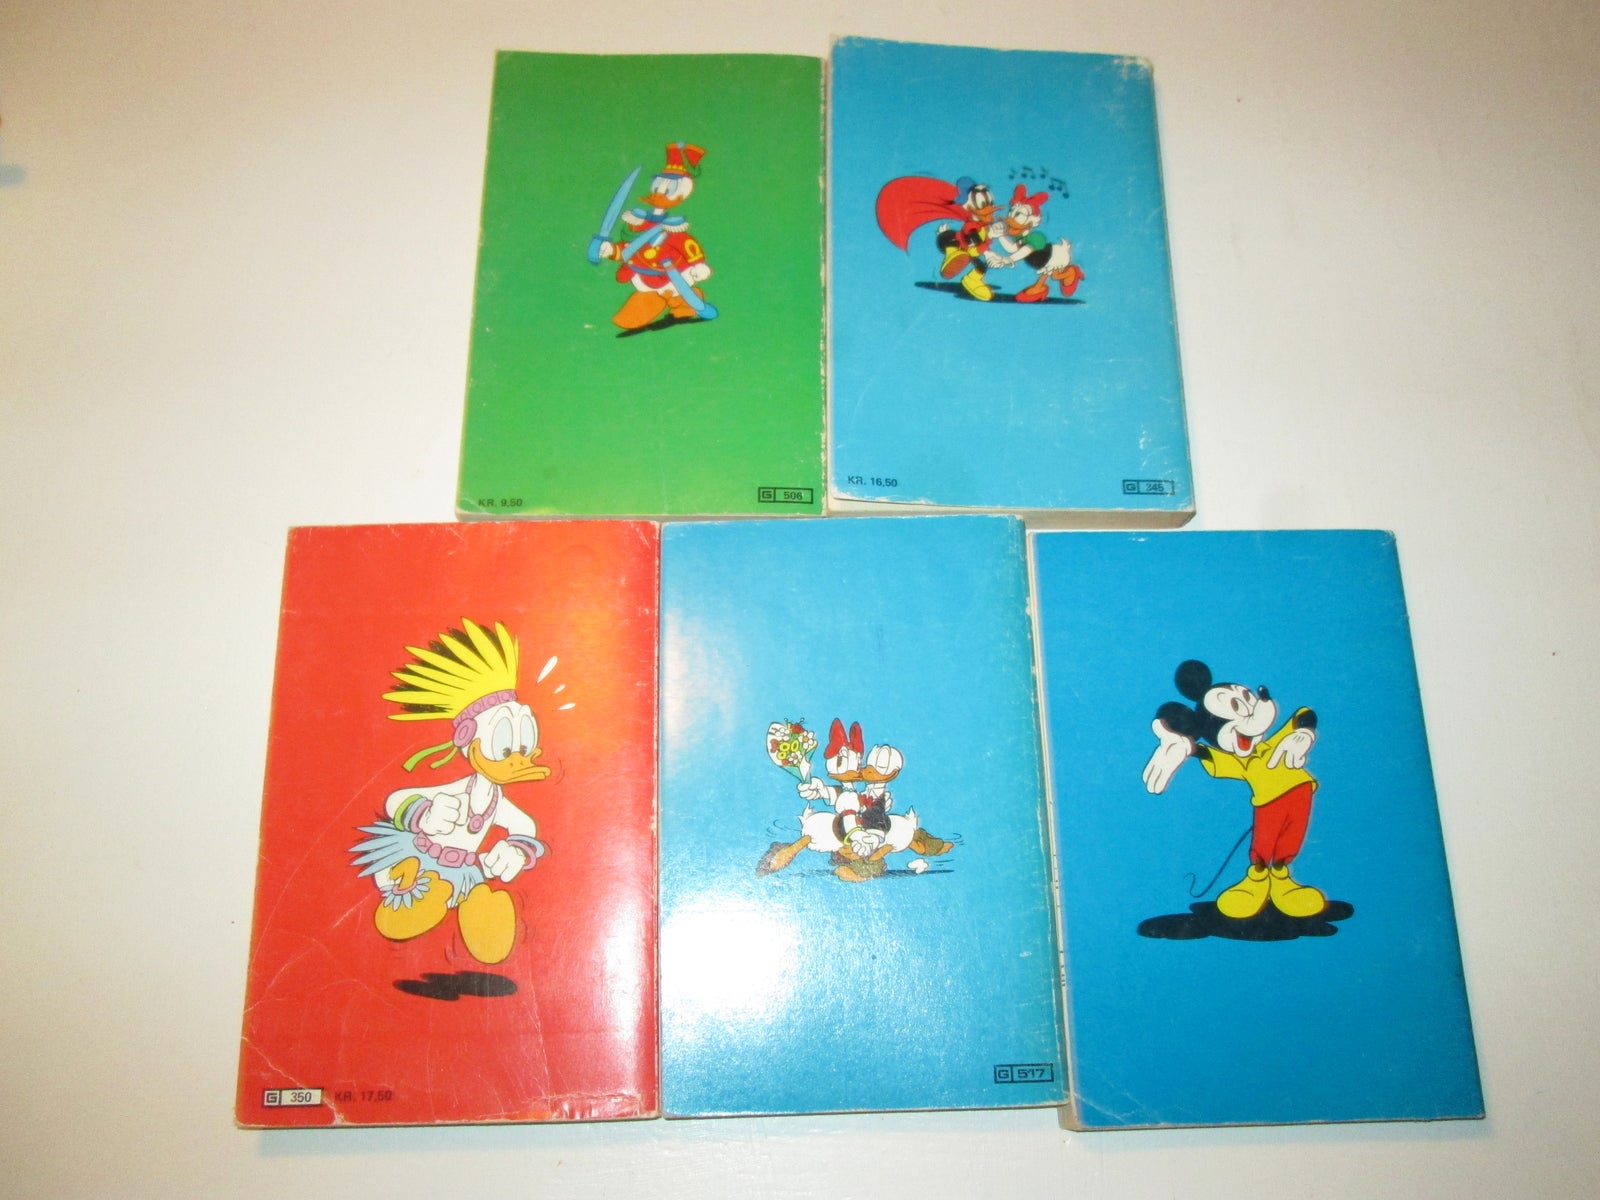 5 tidlige Jumbobøger, Walt Disney